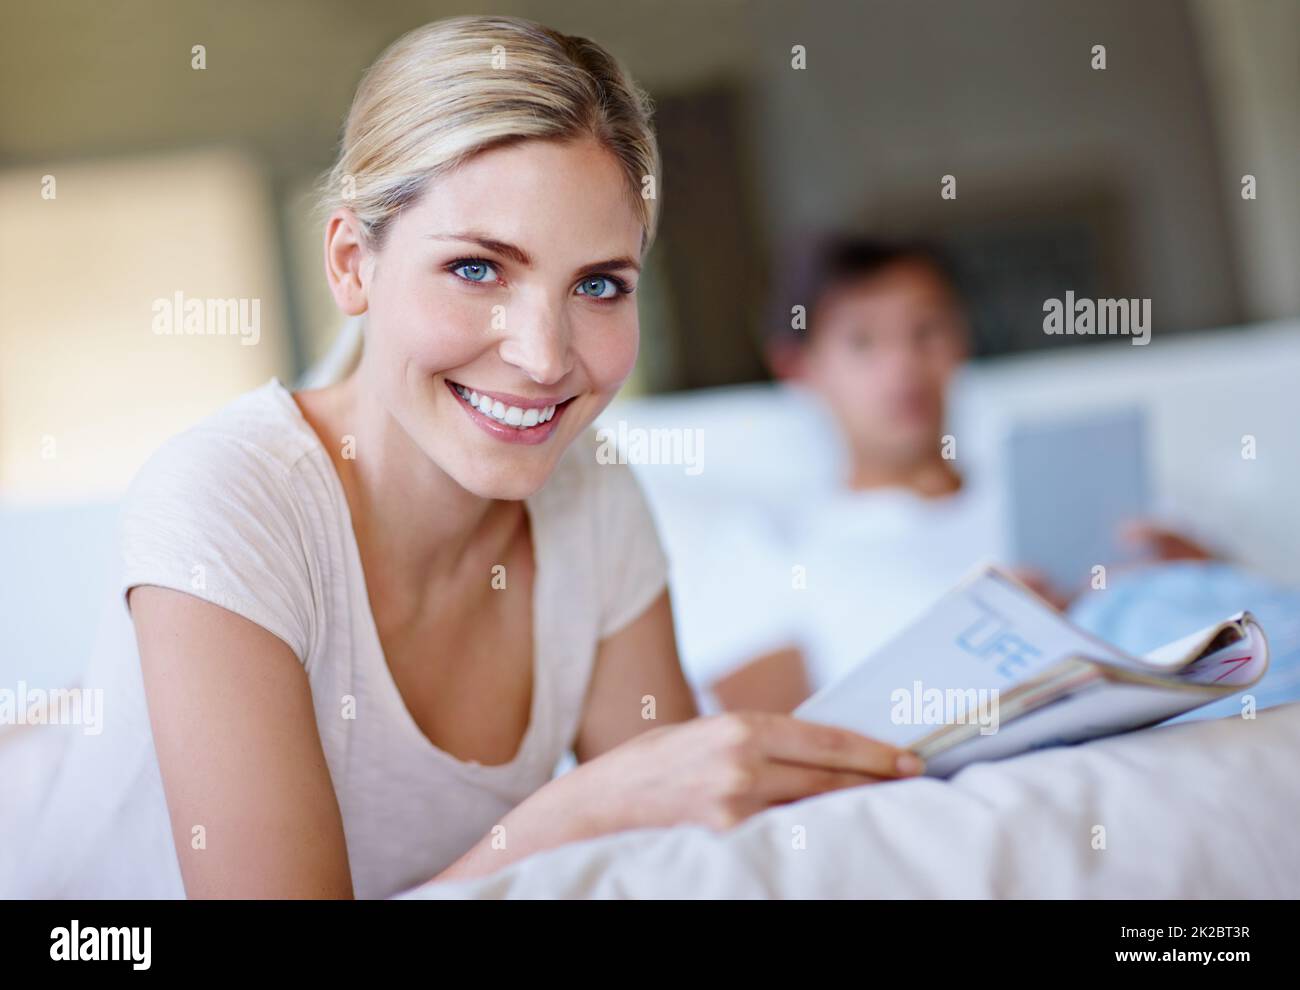 Blättern Sie um für ein glücklicheres Ich. Aufnahme einer glücklichen jungen Frau, die im Bett liegt und eine Zeitschrift liest, während ihr Mann ein digitales Tablet im Hintergrund verwendet. Stockfoto